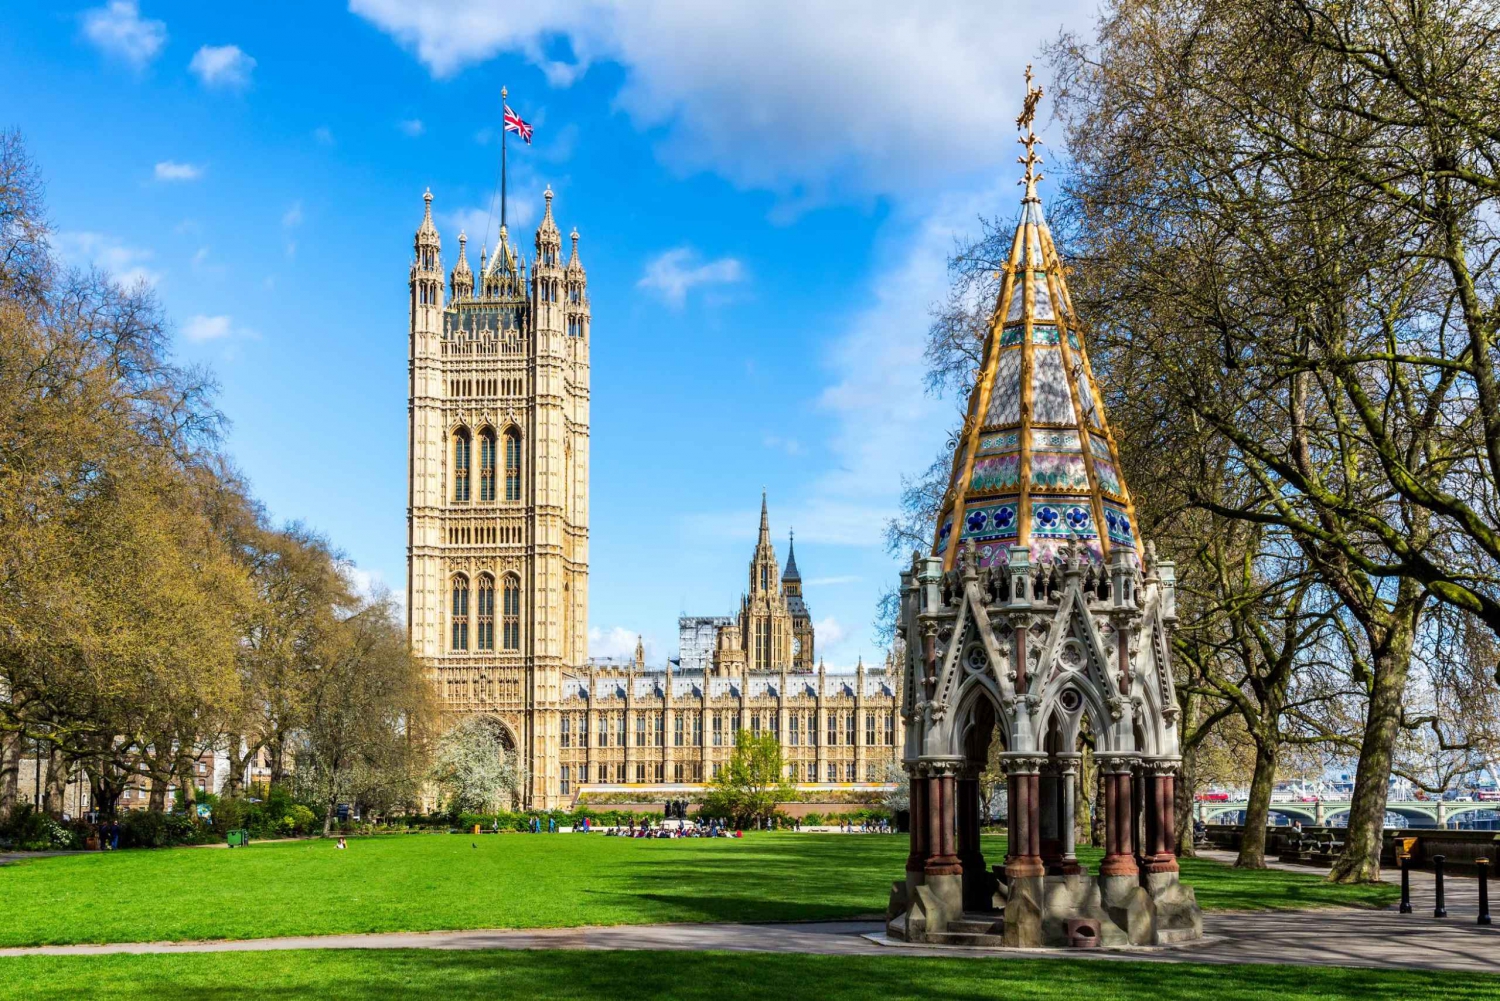 Londyn: Opactwo Westminsterskie i opcjonalna wycieczka do Parlamentu